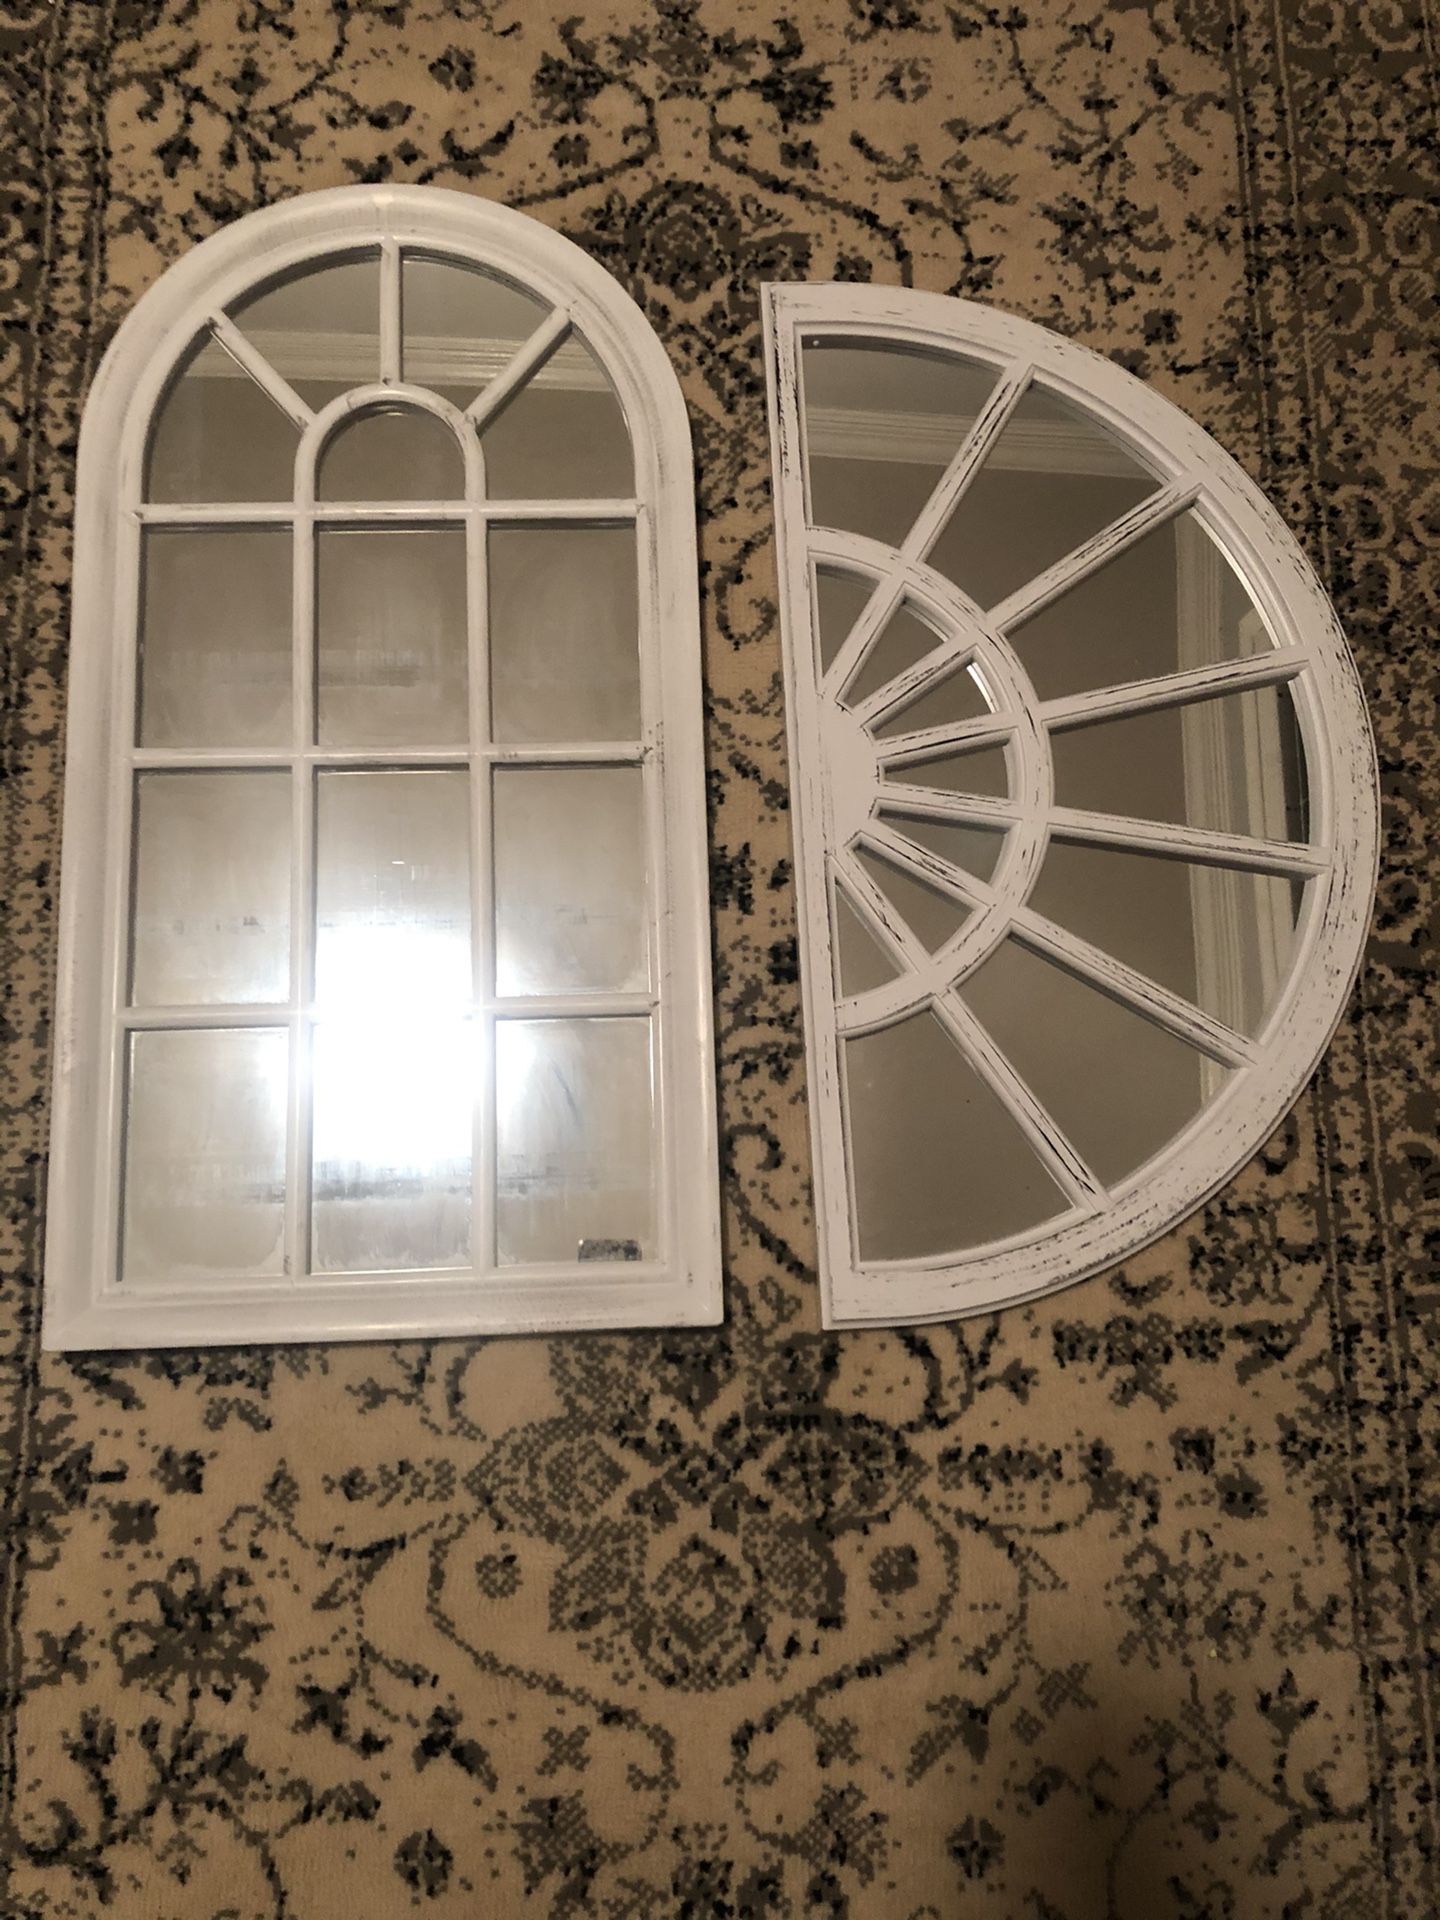 2 wall decor mirrors